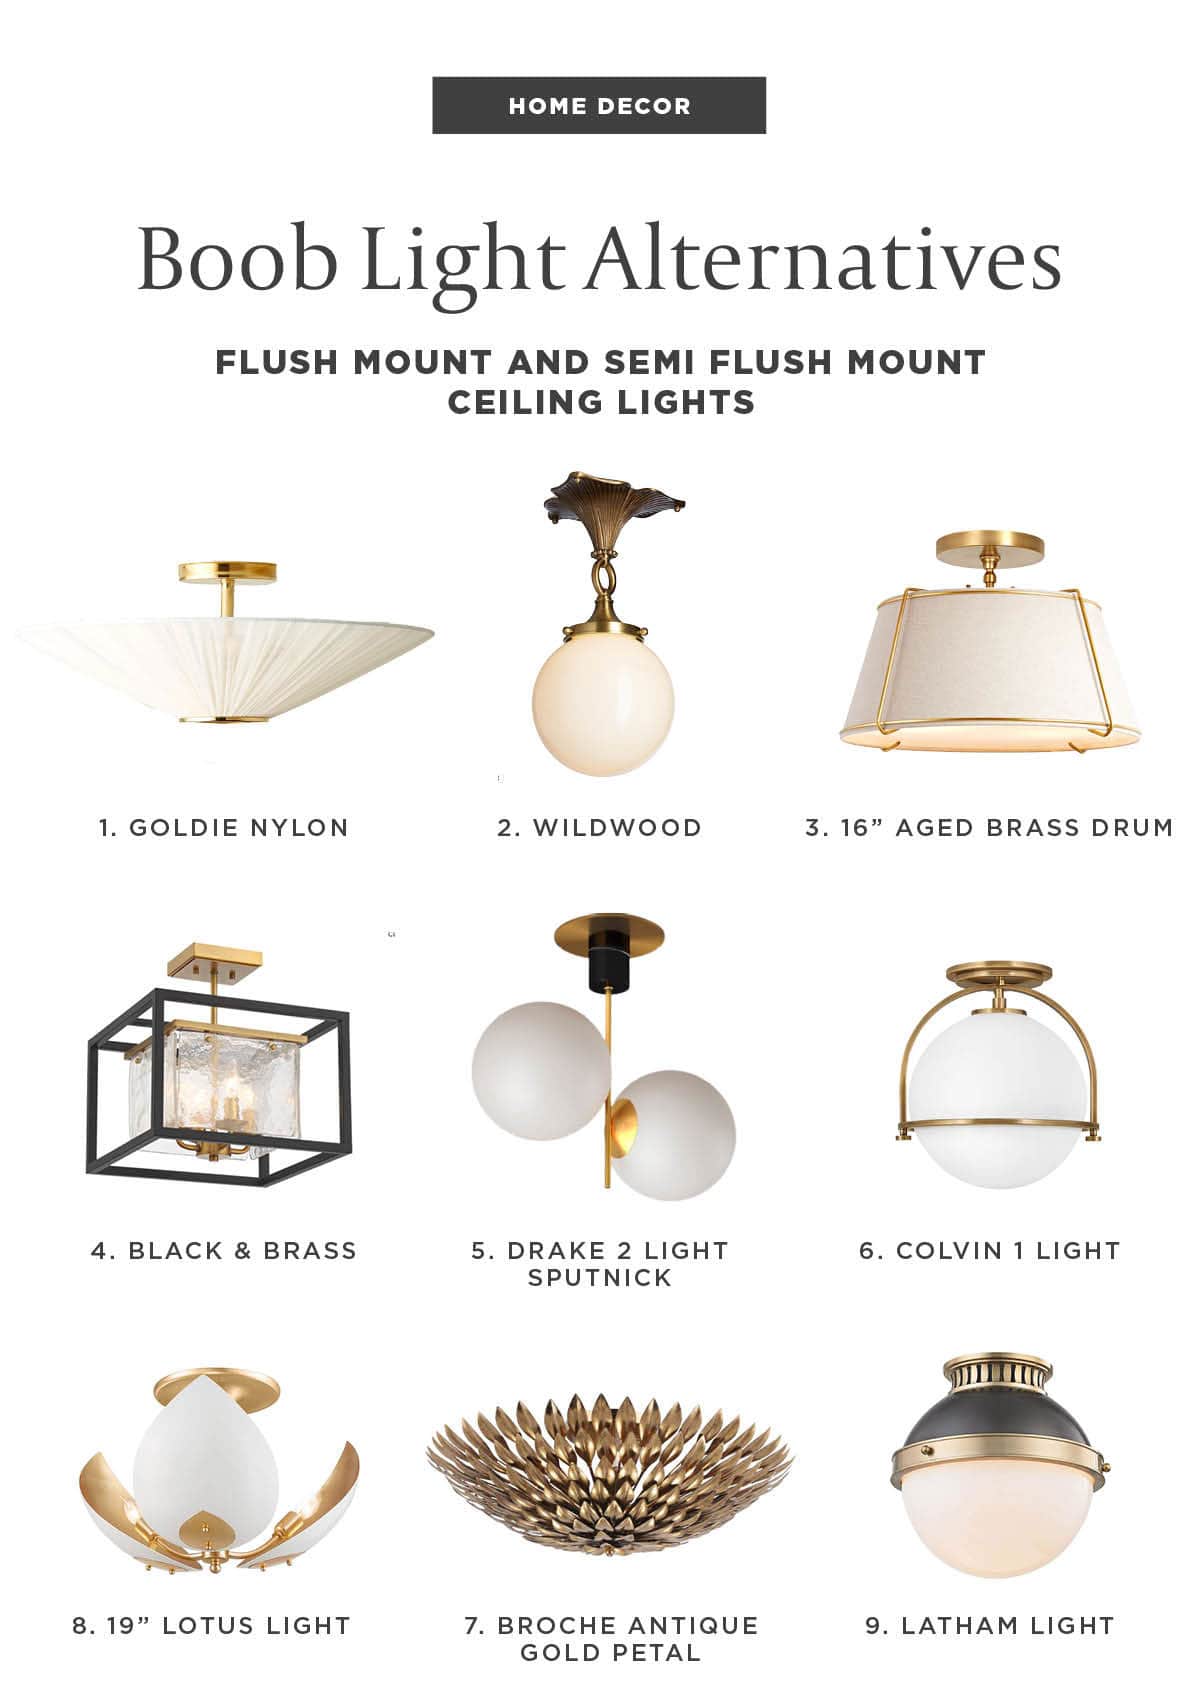 Boob light alternatives - ceiling lights